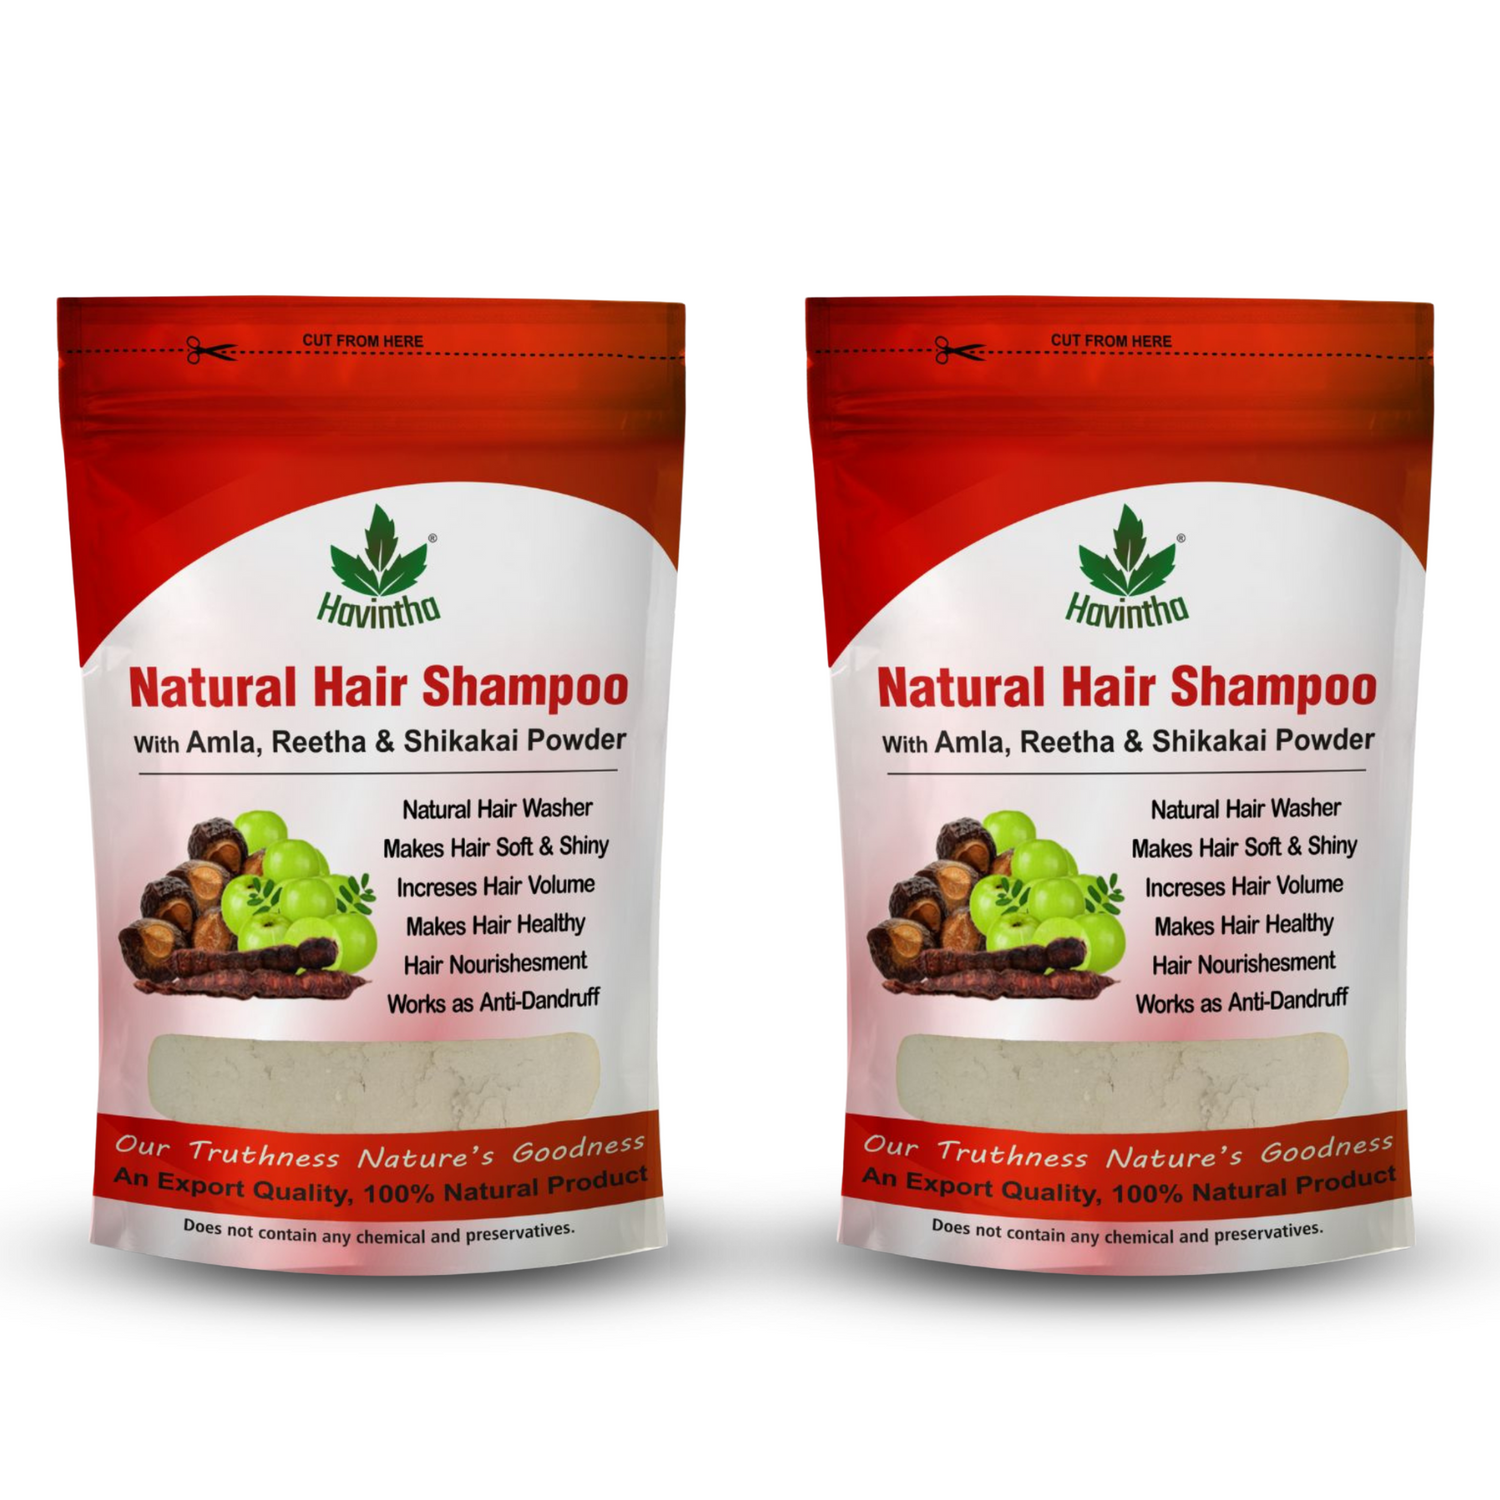 Natural Hair Shampoo Packaging